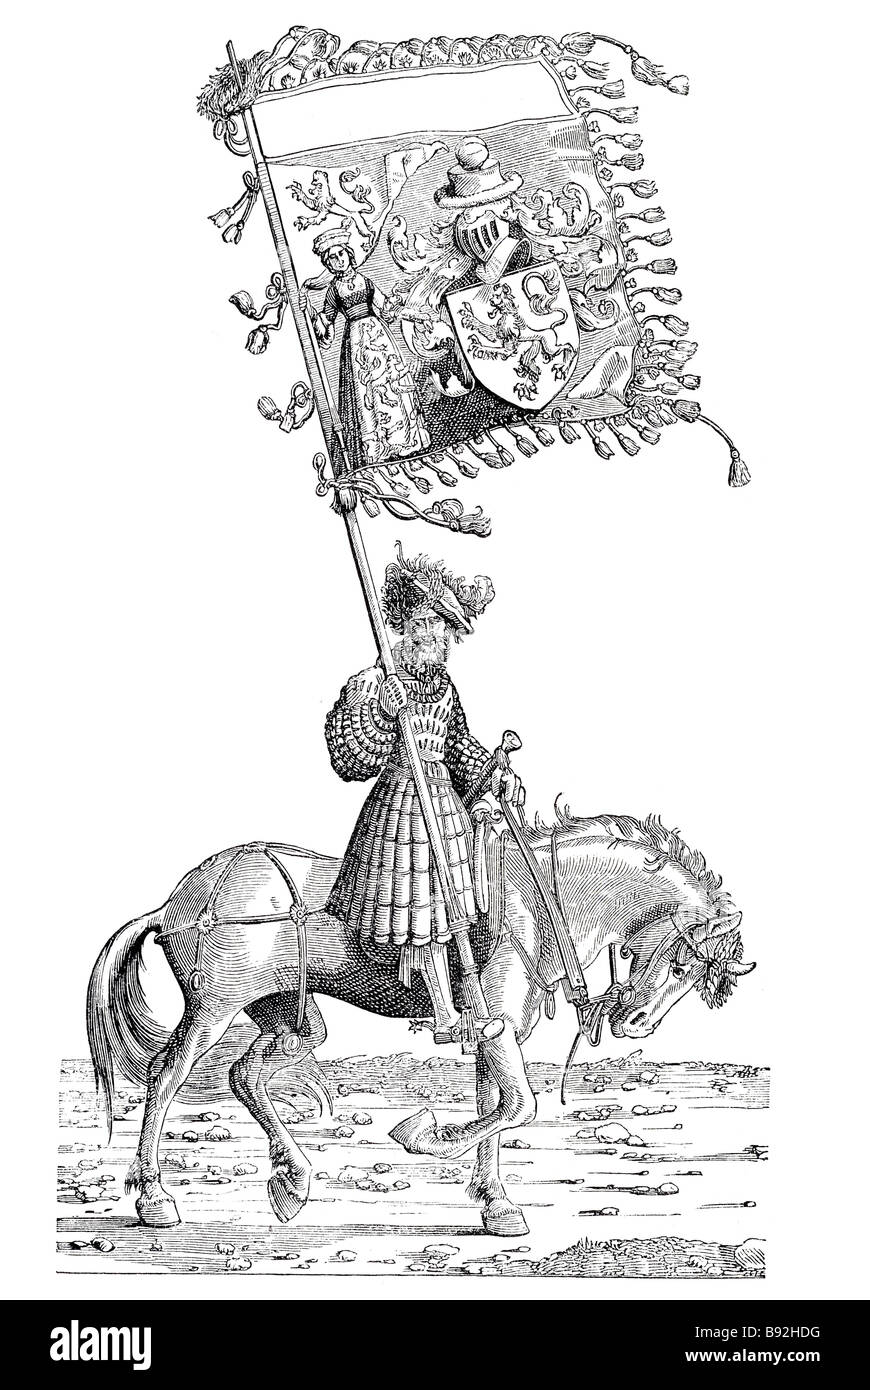 Burgmair il marchio soldato signore cavaliere vestito di periodo di equitazione abbigliamento tradizionale banner emblema corazza costume uomo equina Hans Foto Stock